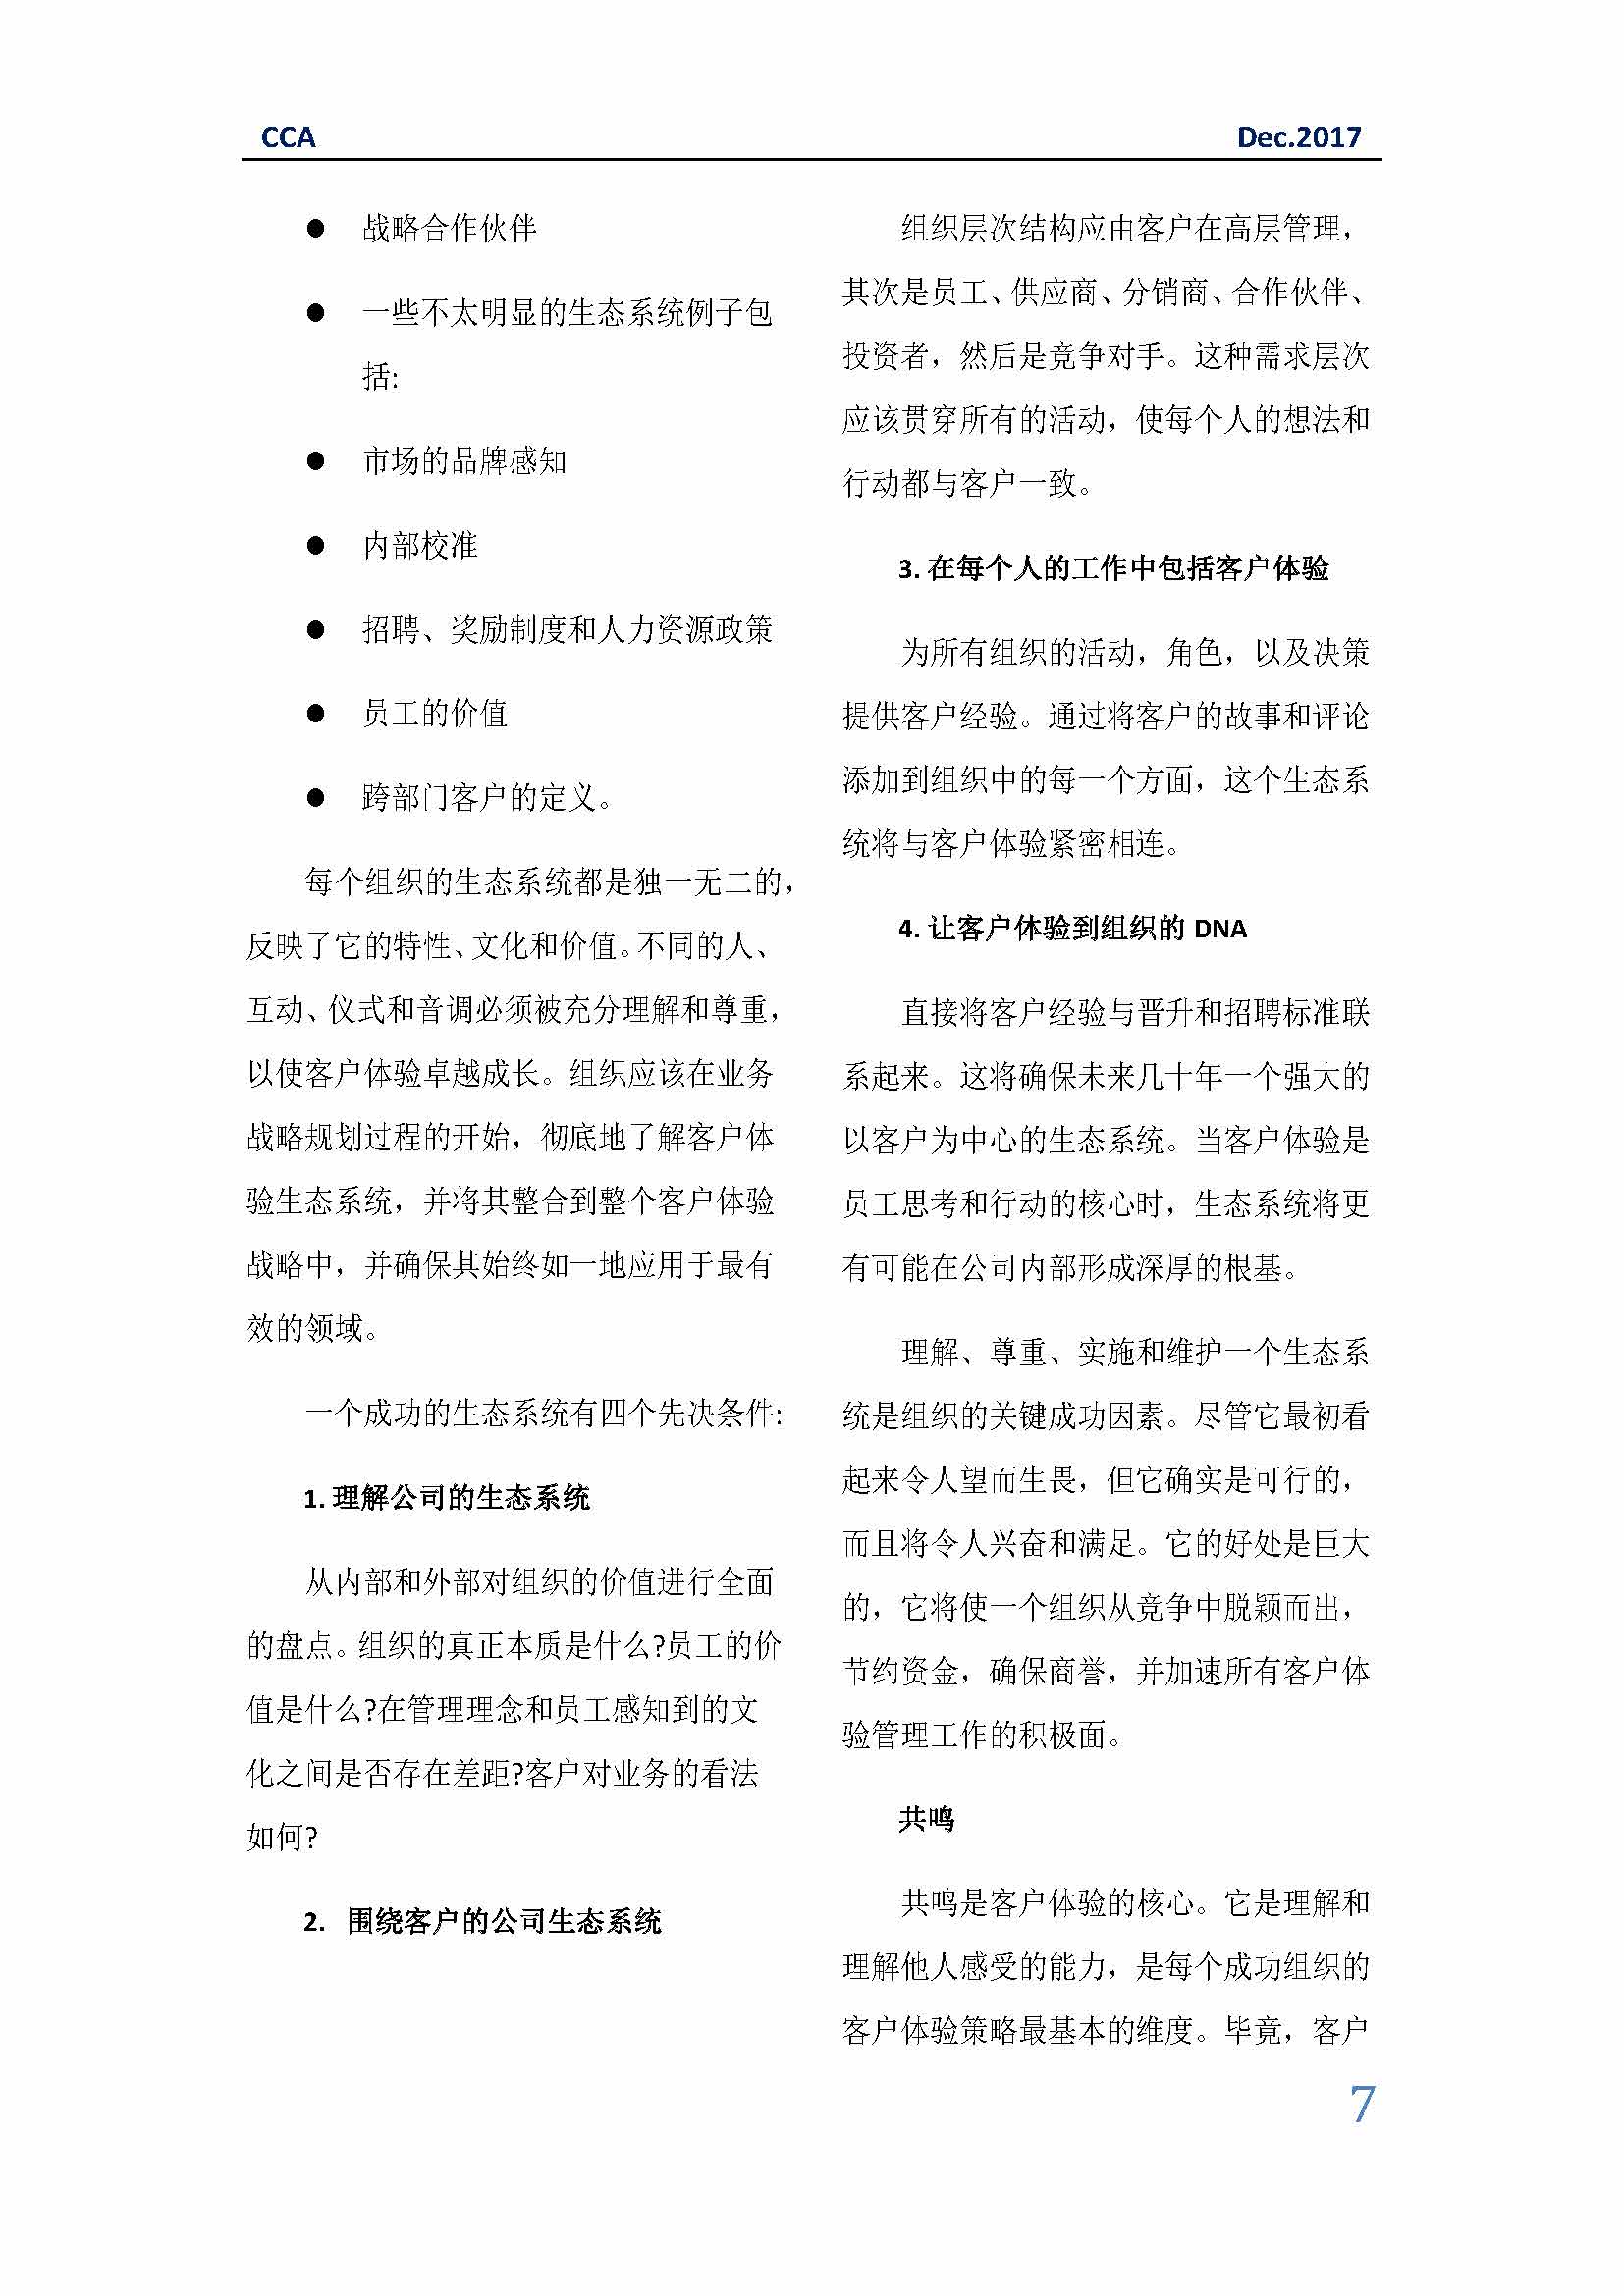 中国科技咨询协会国际快讯（第三十一期）_页面_07.jpg